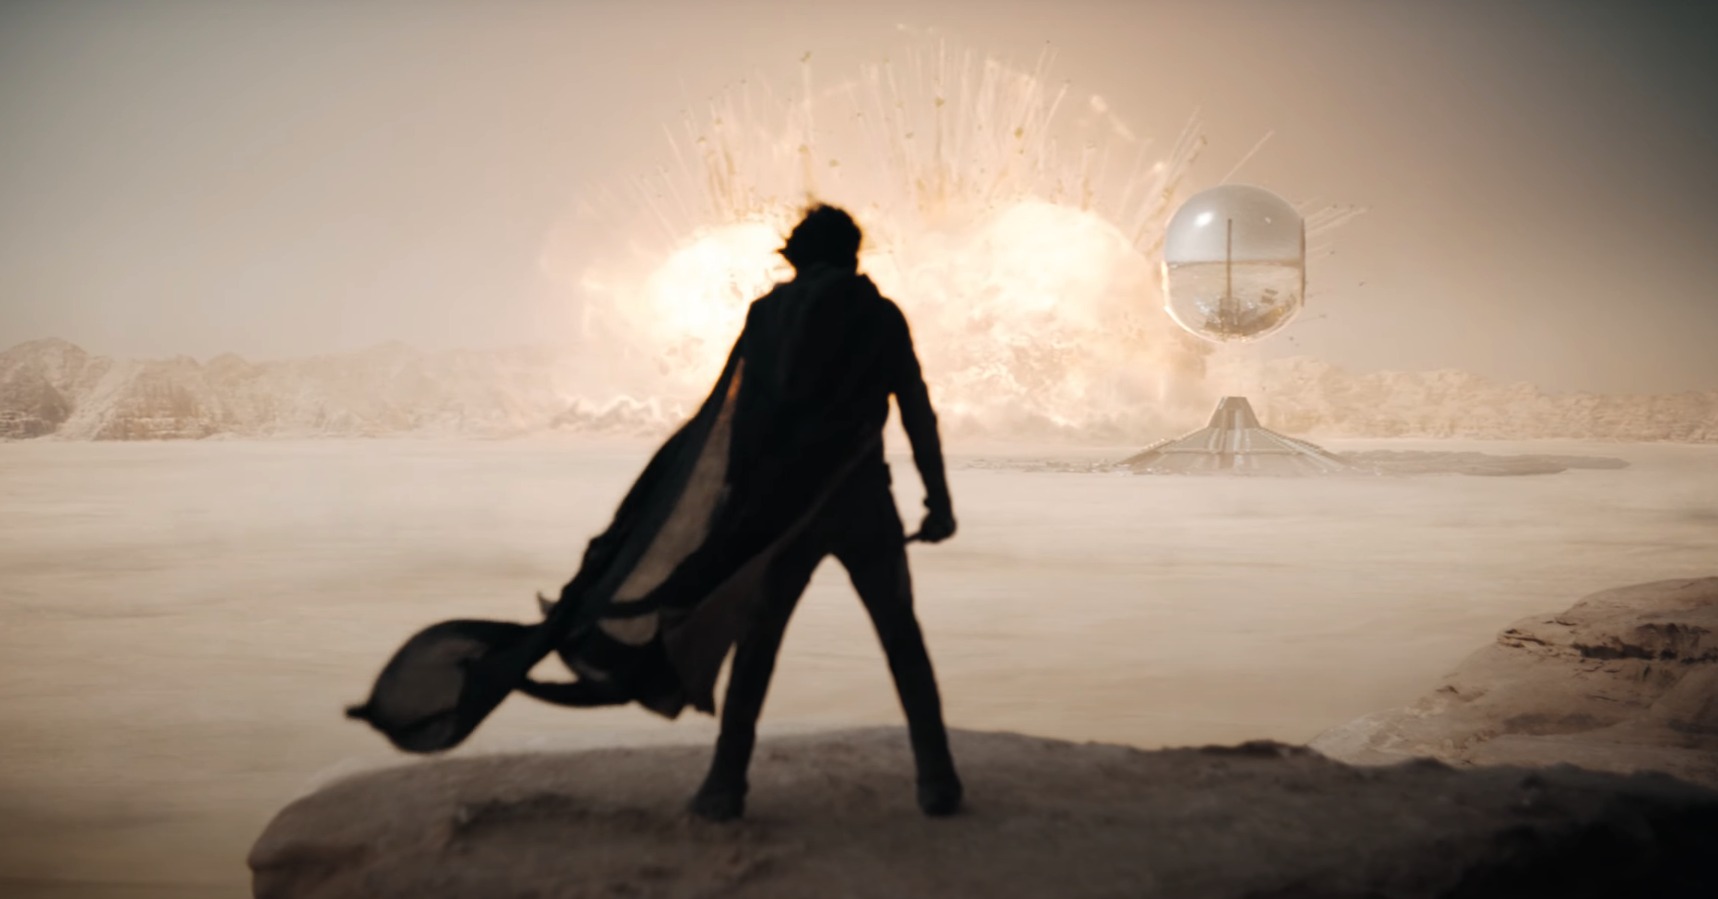 Lý giải đoạn kết của Dune 2: Thánh chiến vũ trụ chính thức bùng nổ - Ảnh 1.